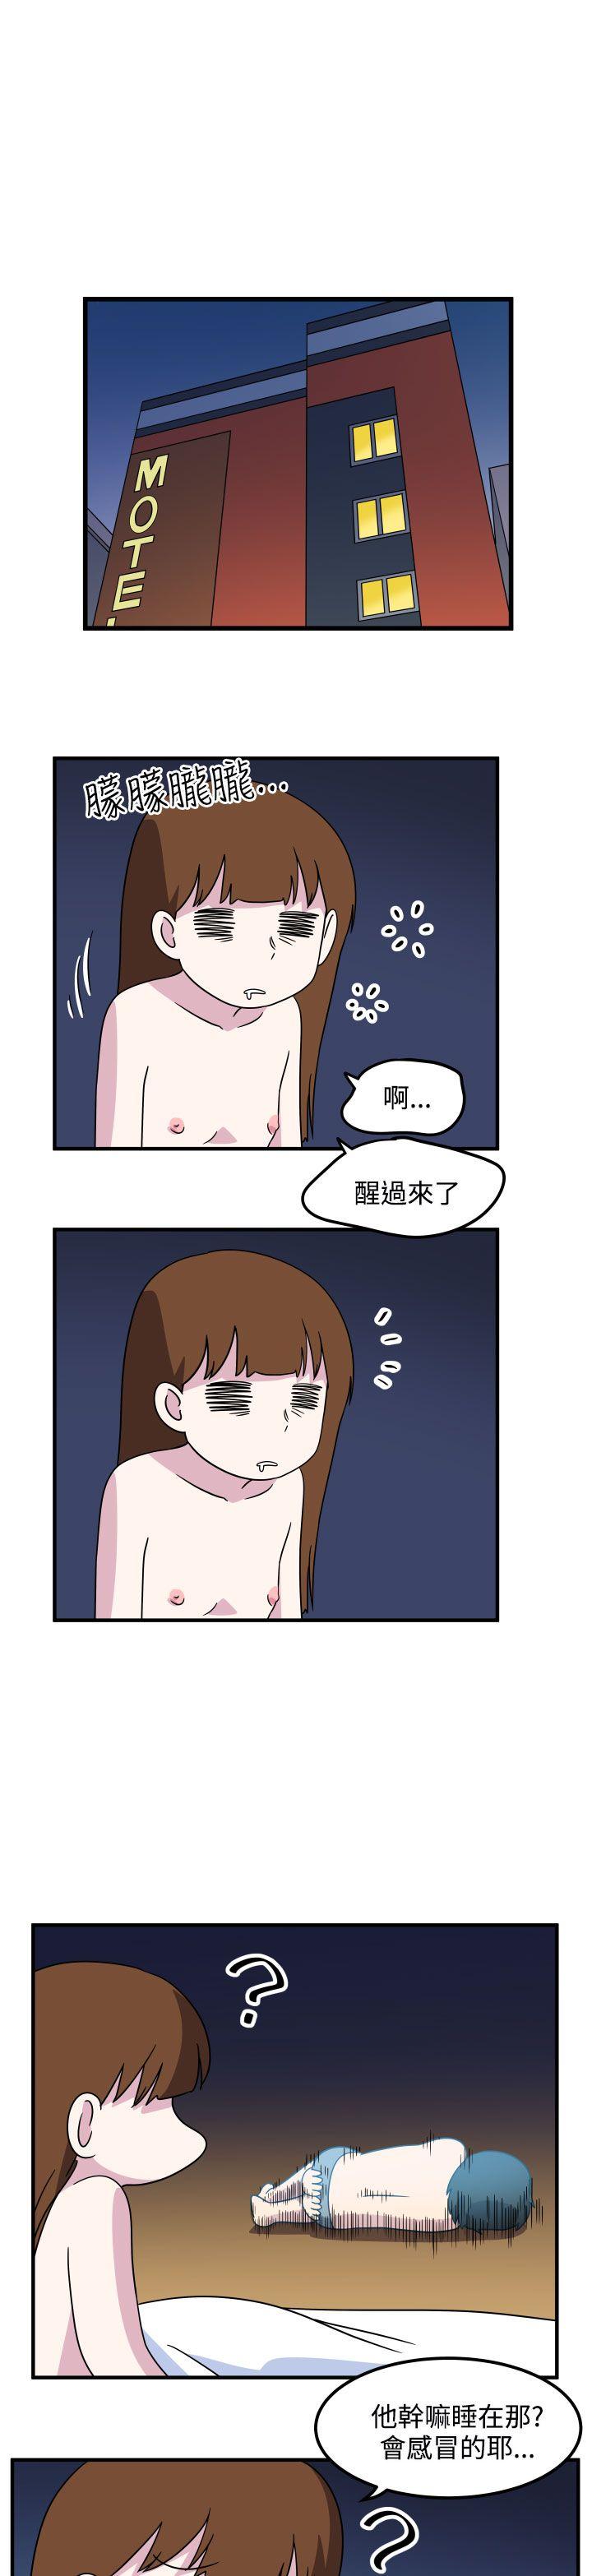 韩国污漫画 腹黑女的異想世界 第28话 11